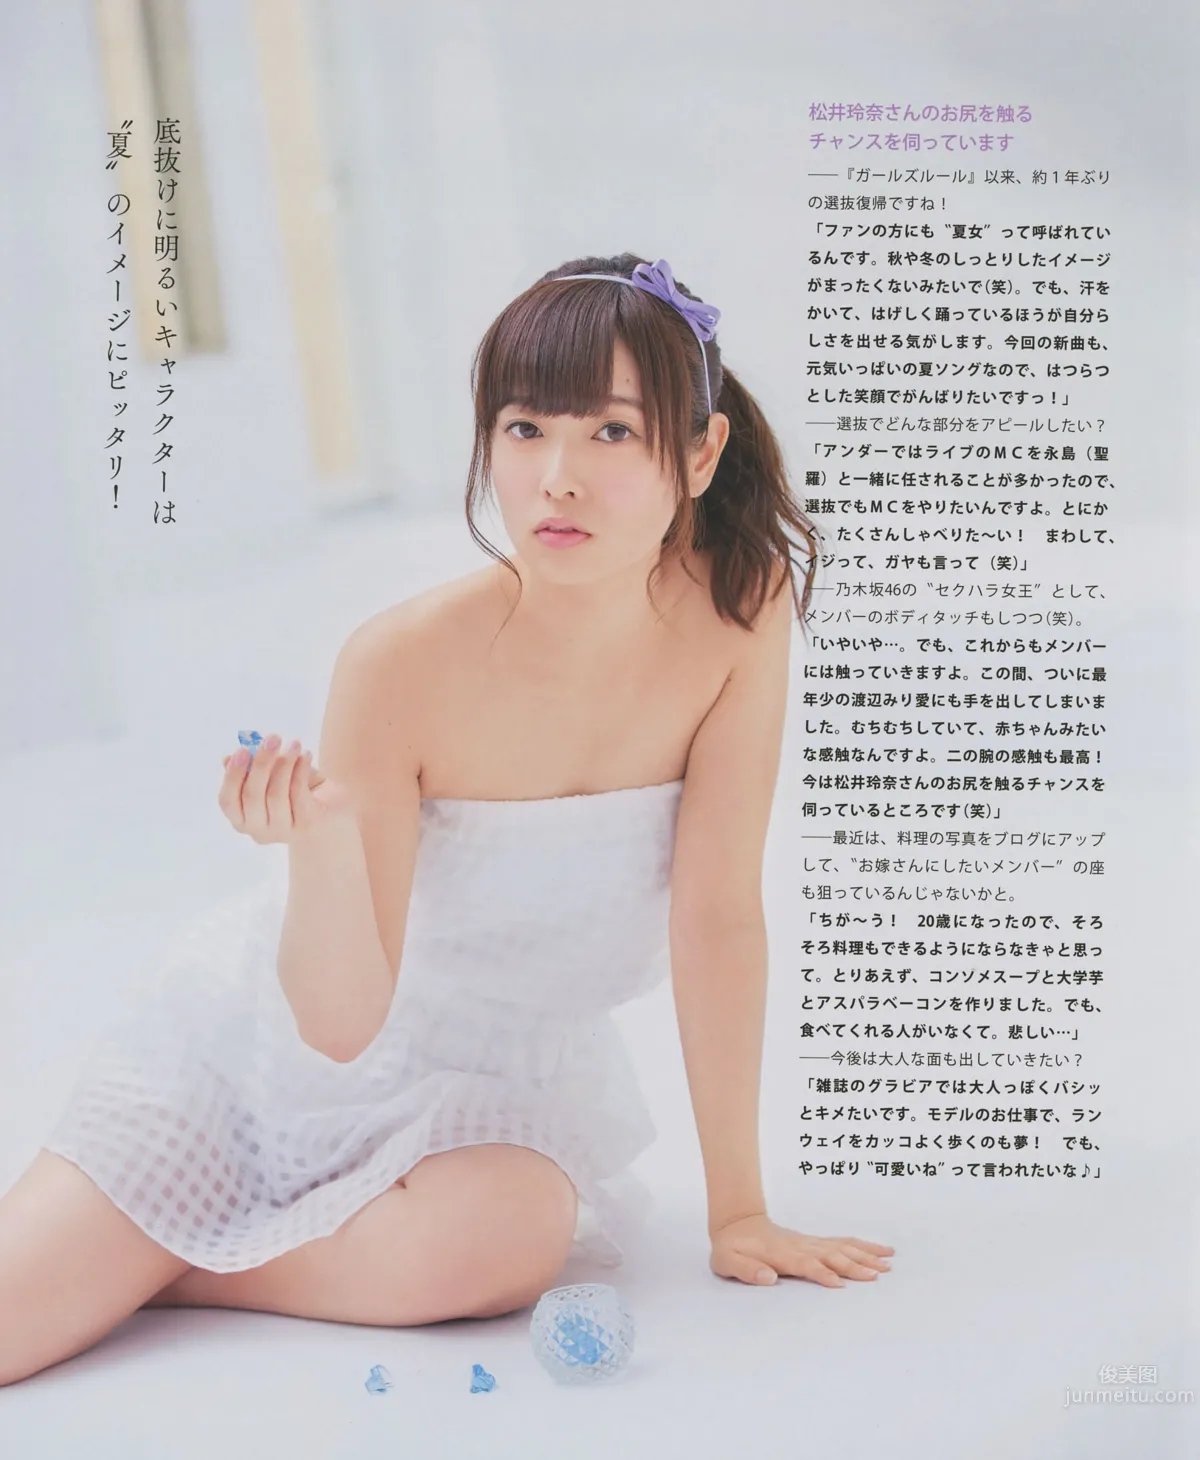 [Bomb Magazine] 2014.08 09 乃木坂46 SKE48_21